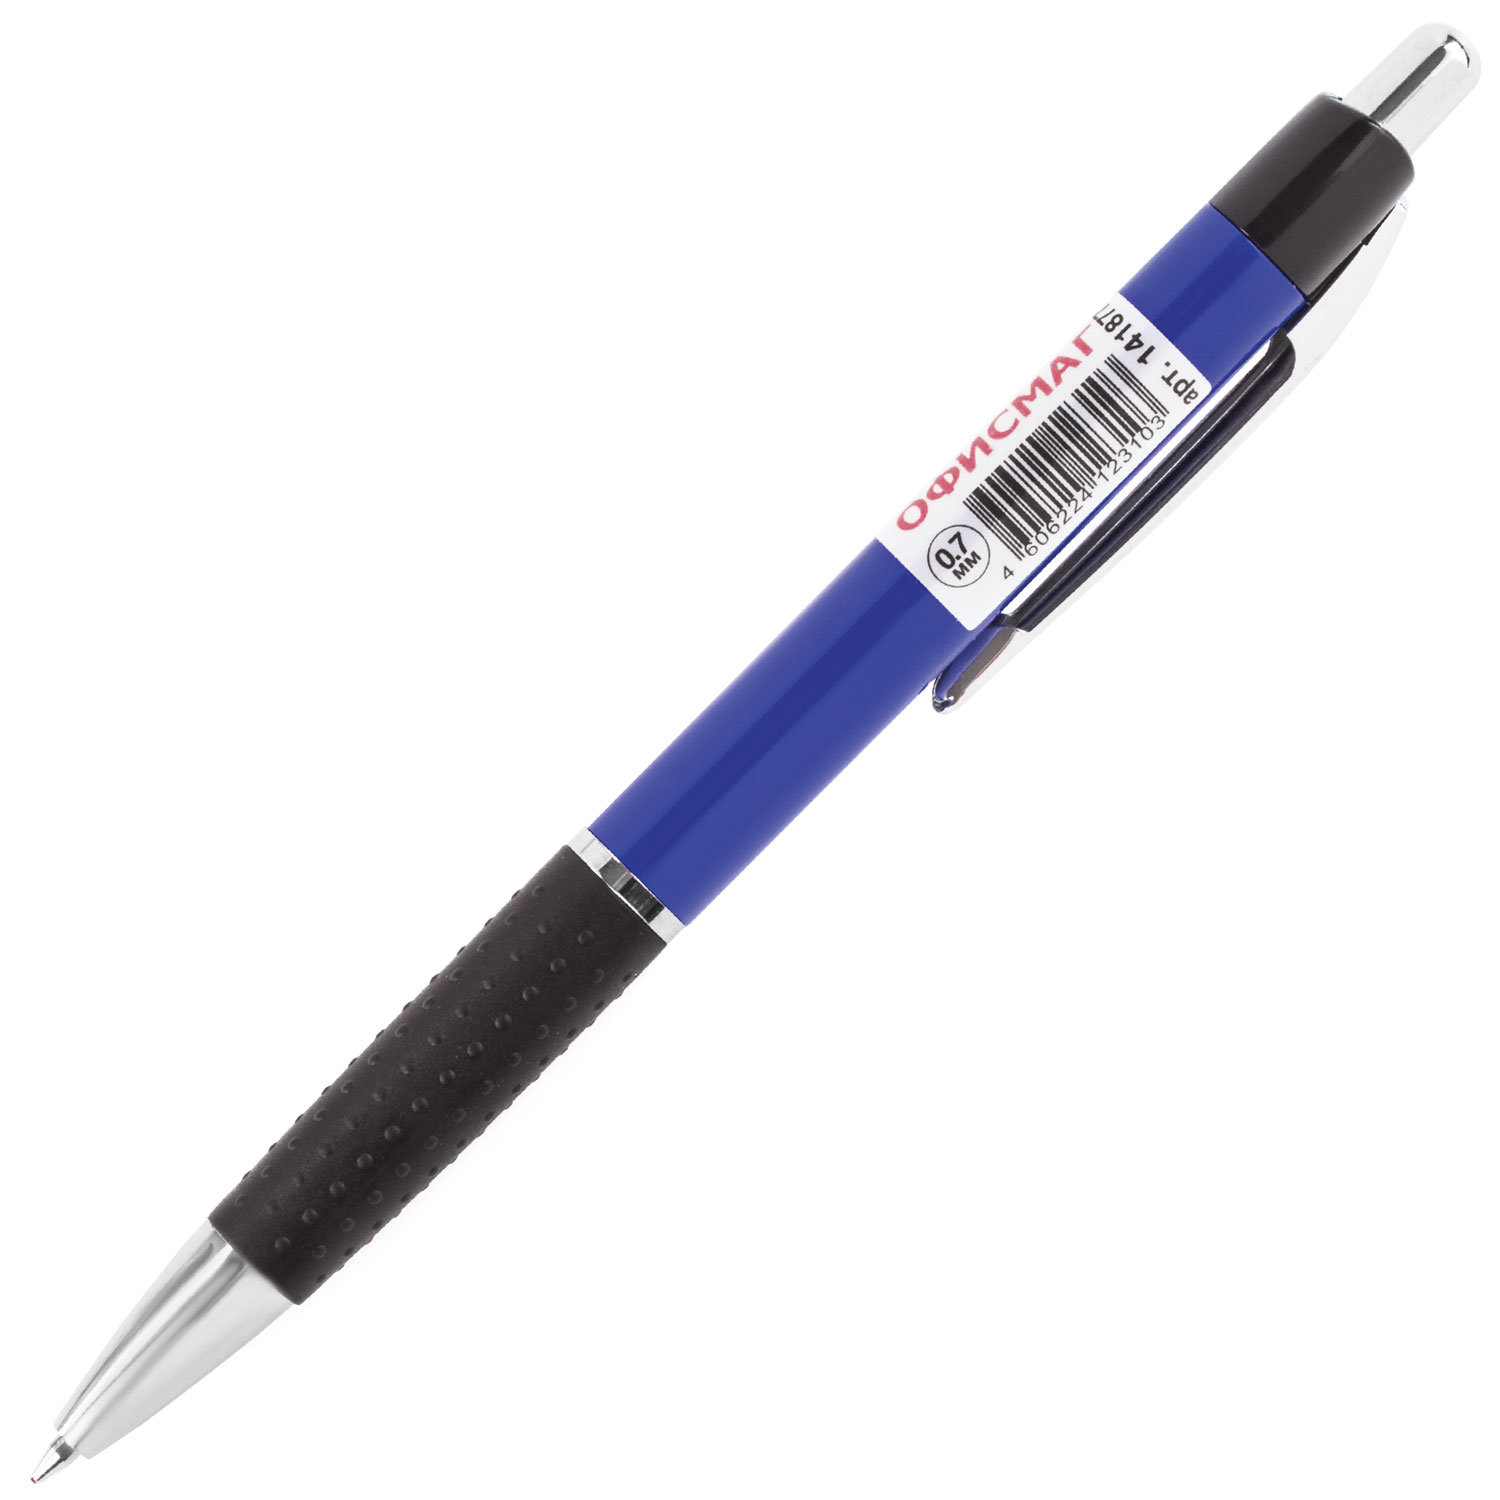 Brauberg 0.7. Ручка БРАУБЕРГ автоматическая синяя. Ручка шариковая синяя БРАУБЕРГ. Ручка БРАУБЕРГ 0.7. Ручка шариковая БРАУБЕРГ 0.7 мм.